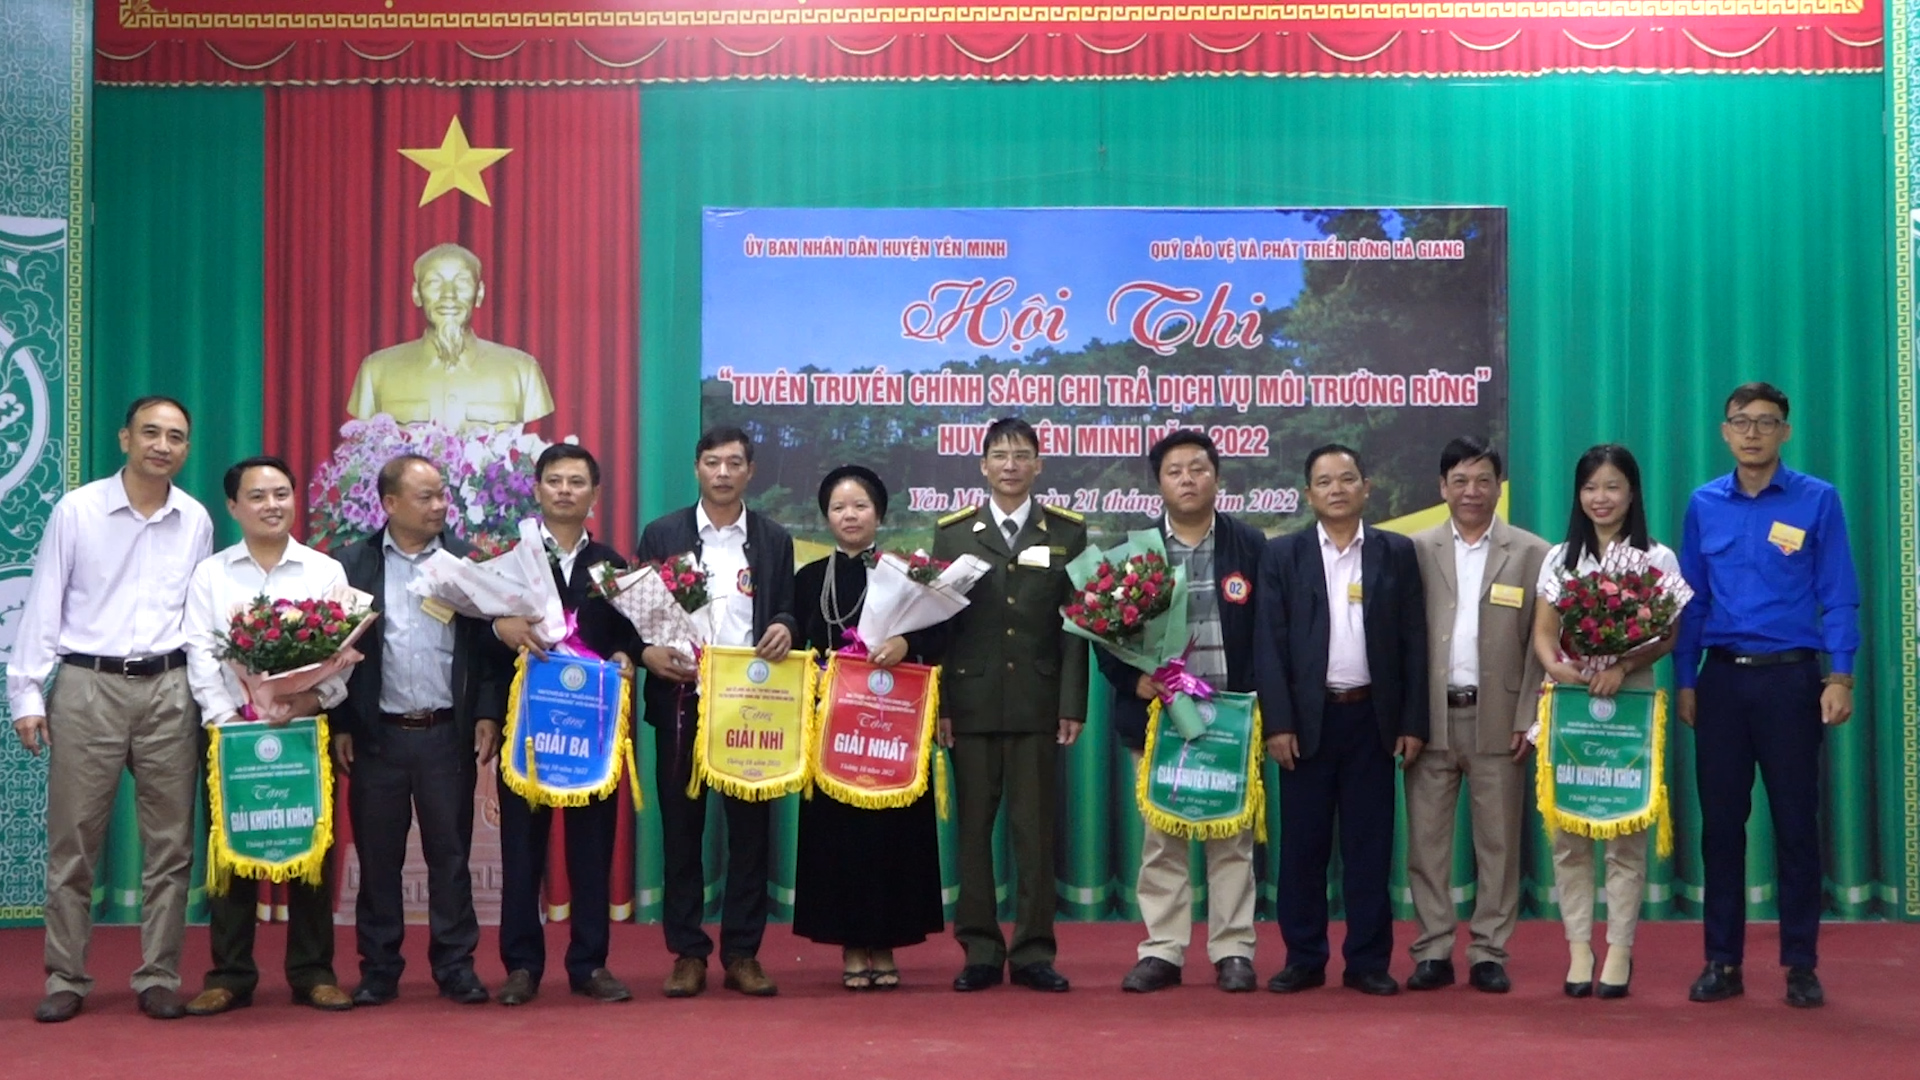 Yên Minh tổ chức hội thi tuyên truyền chính sách chi trả dịch vụ môi trường rừng